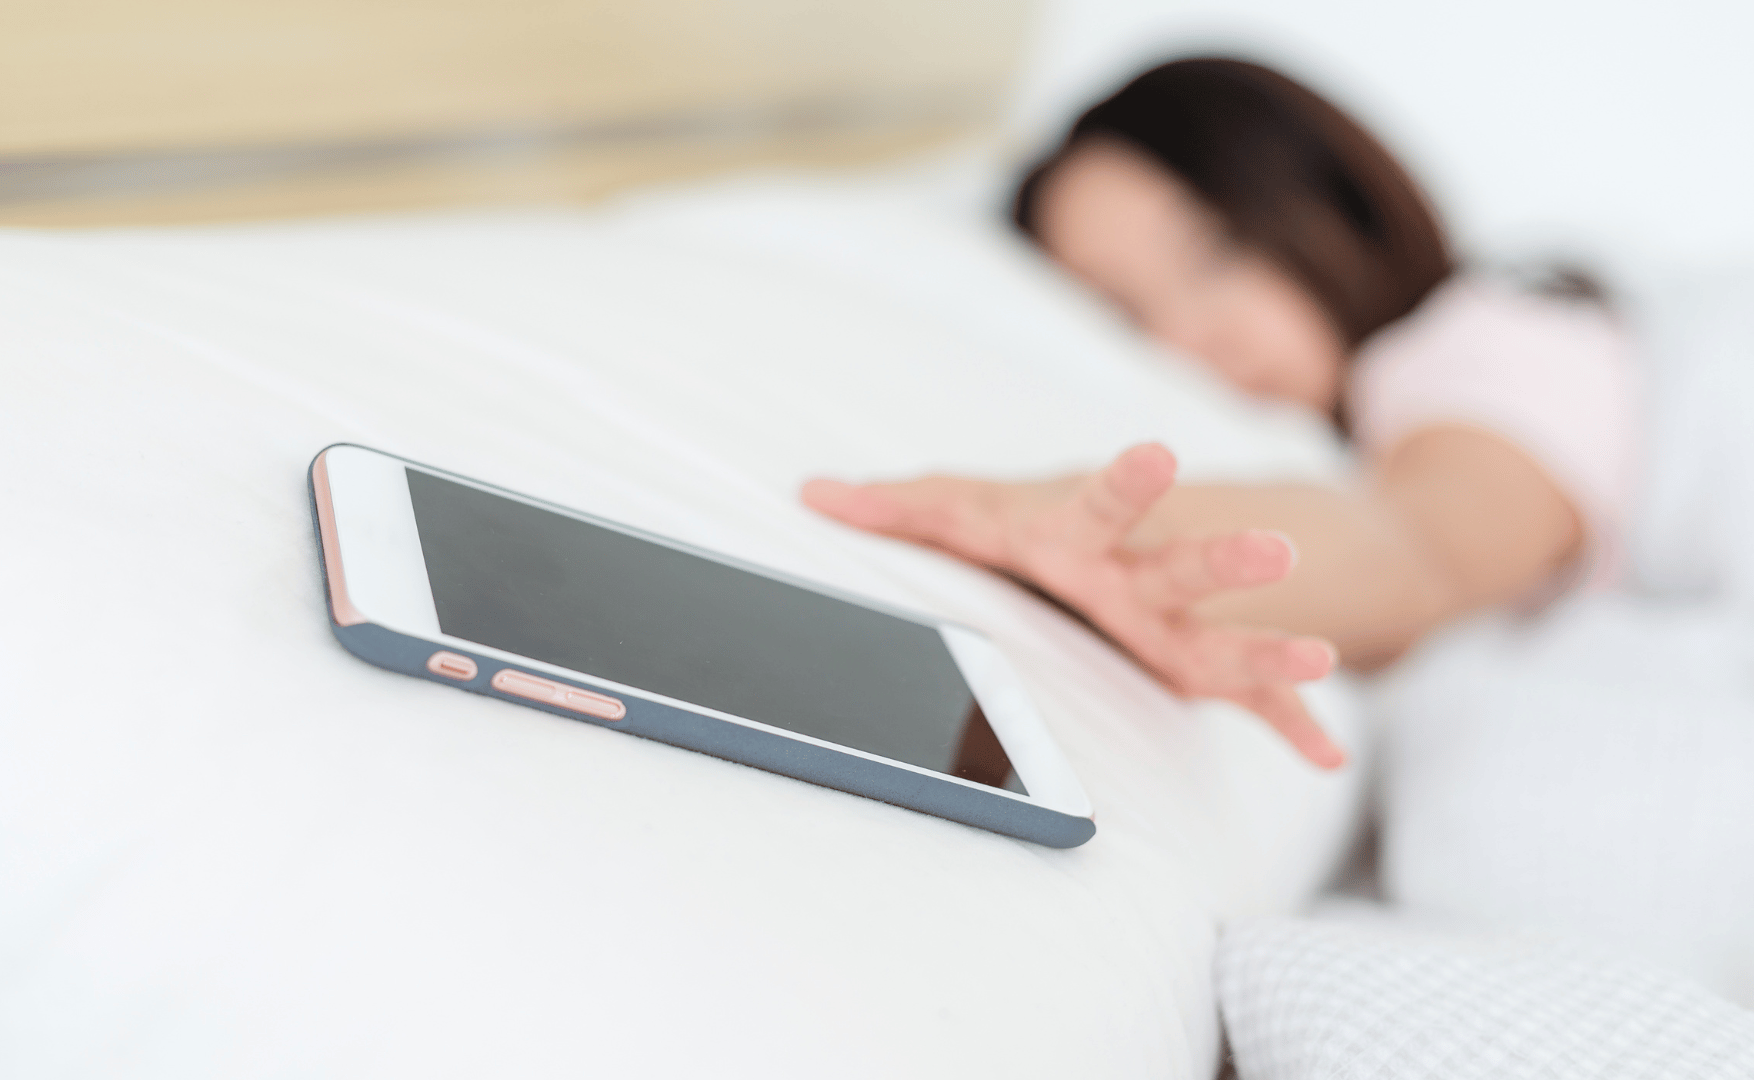 Sóng điện thoại có thật sự gây hại, có nên để điện thoại ở gần khi ngủ hay không?